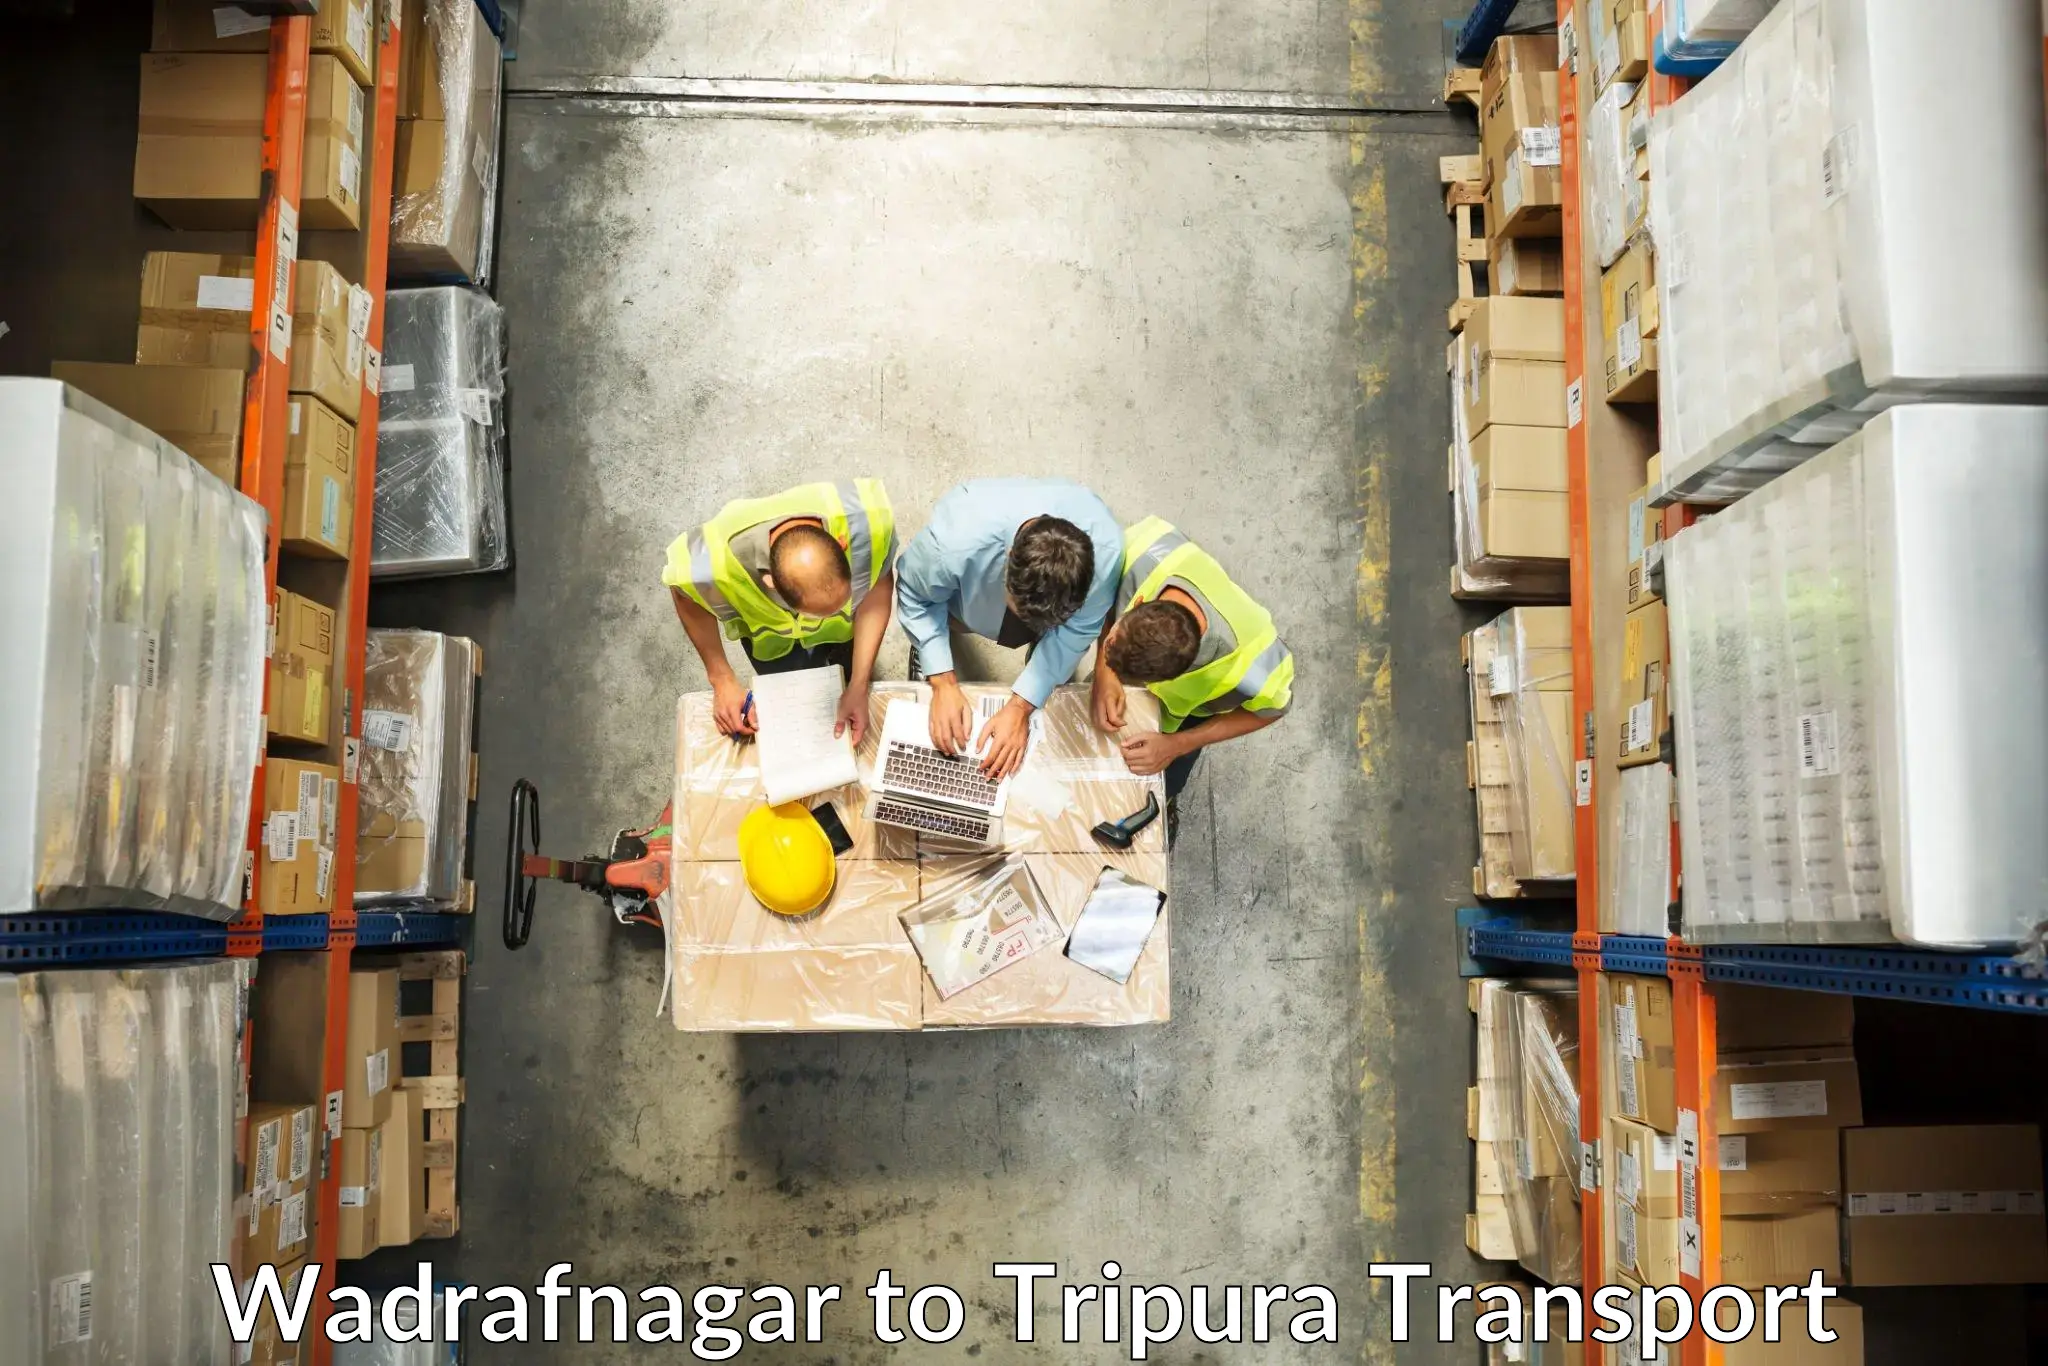 Cargo transportation services Wadrafnagar to North Tripura